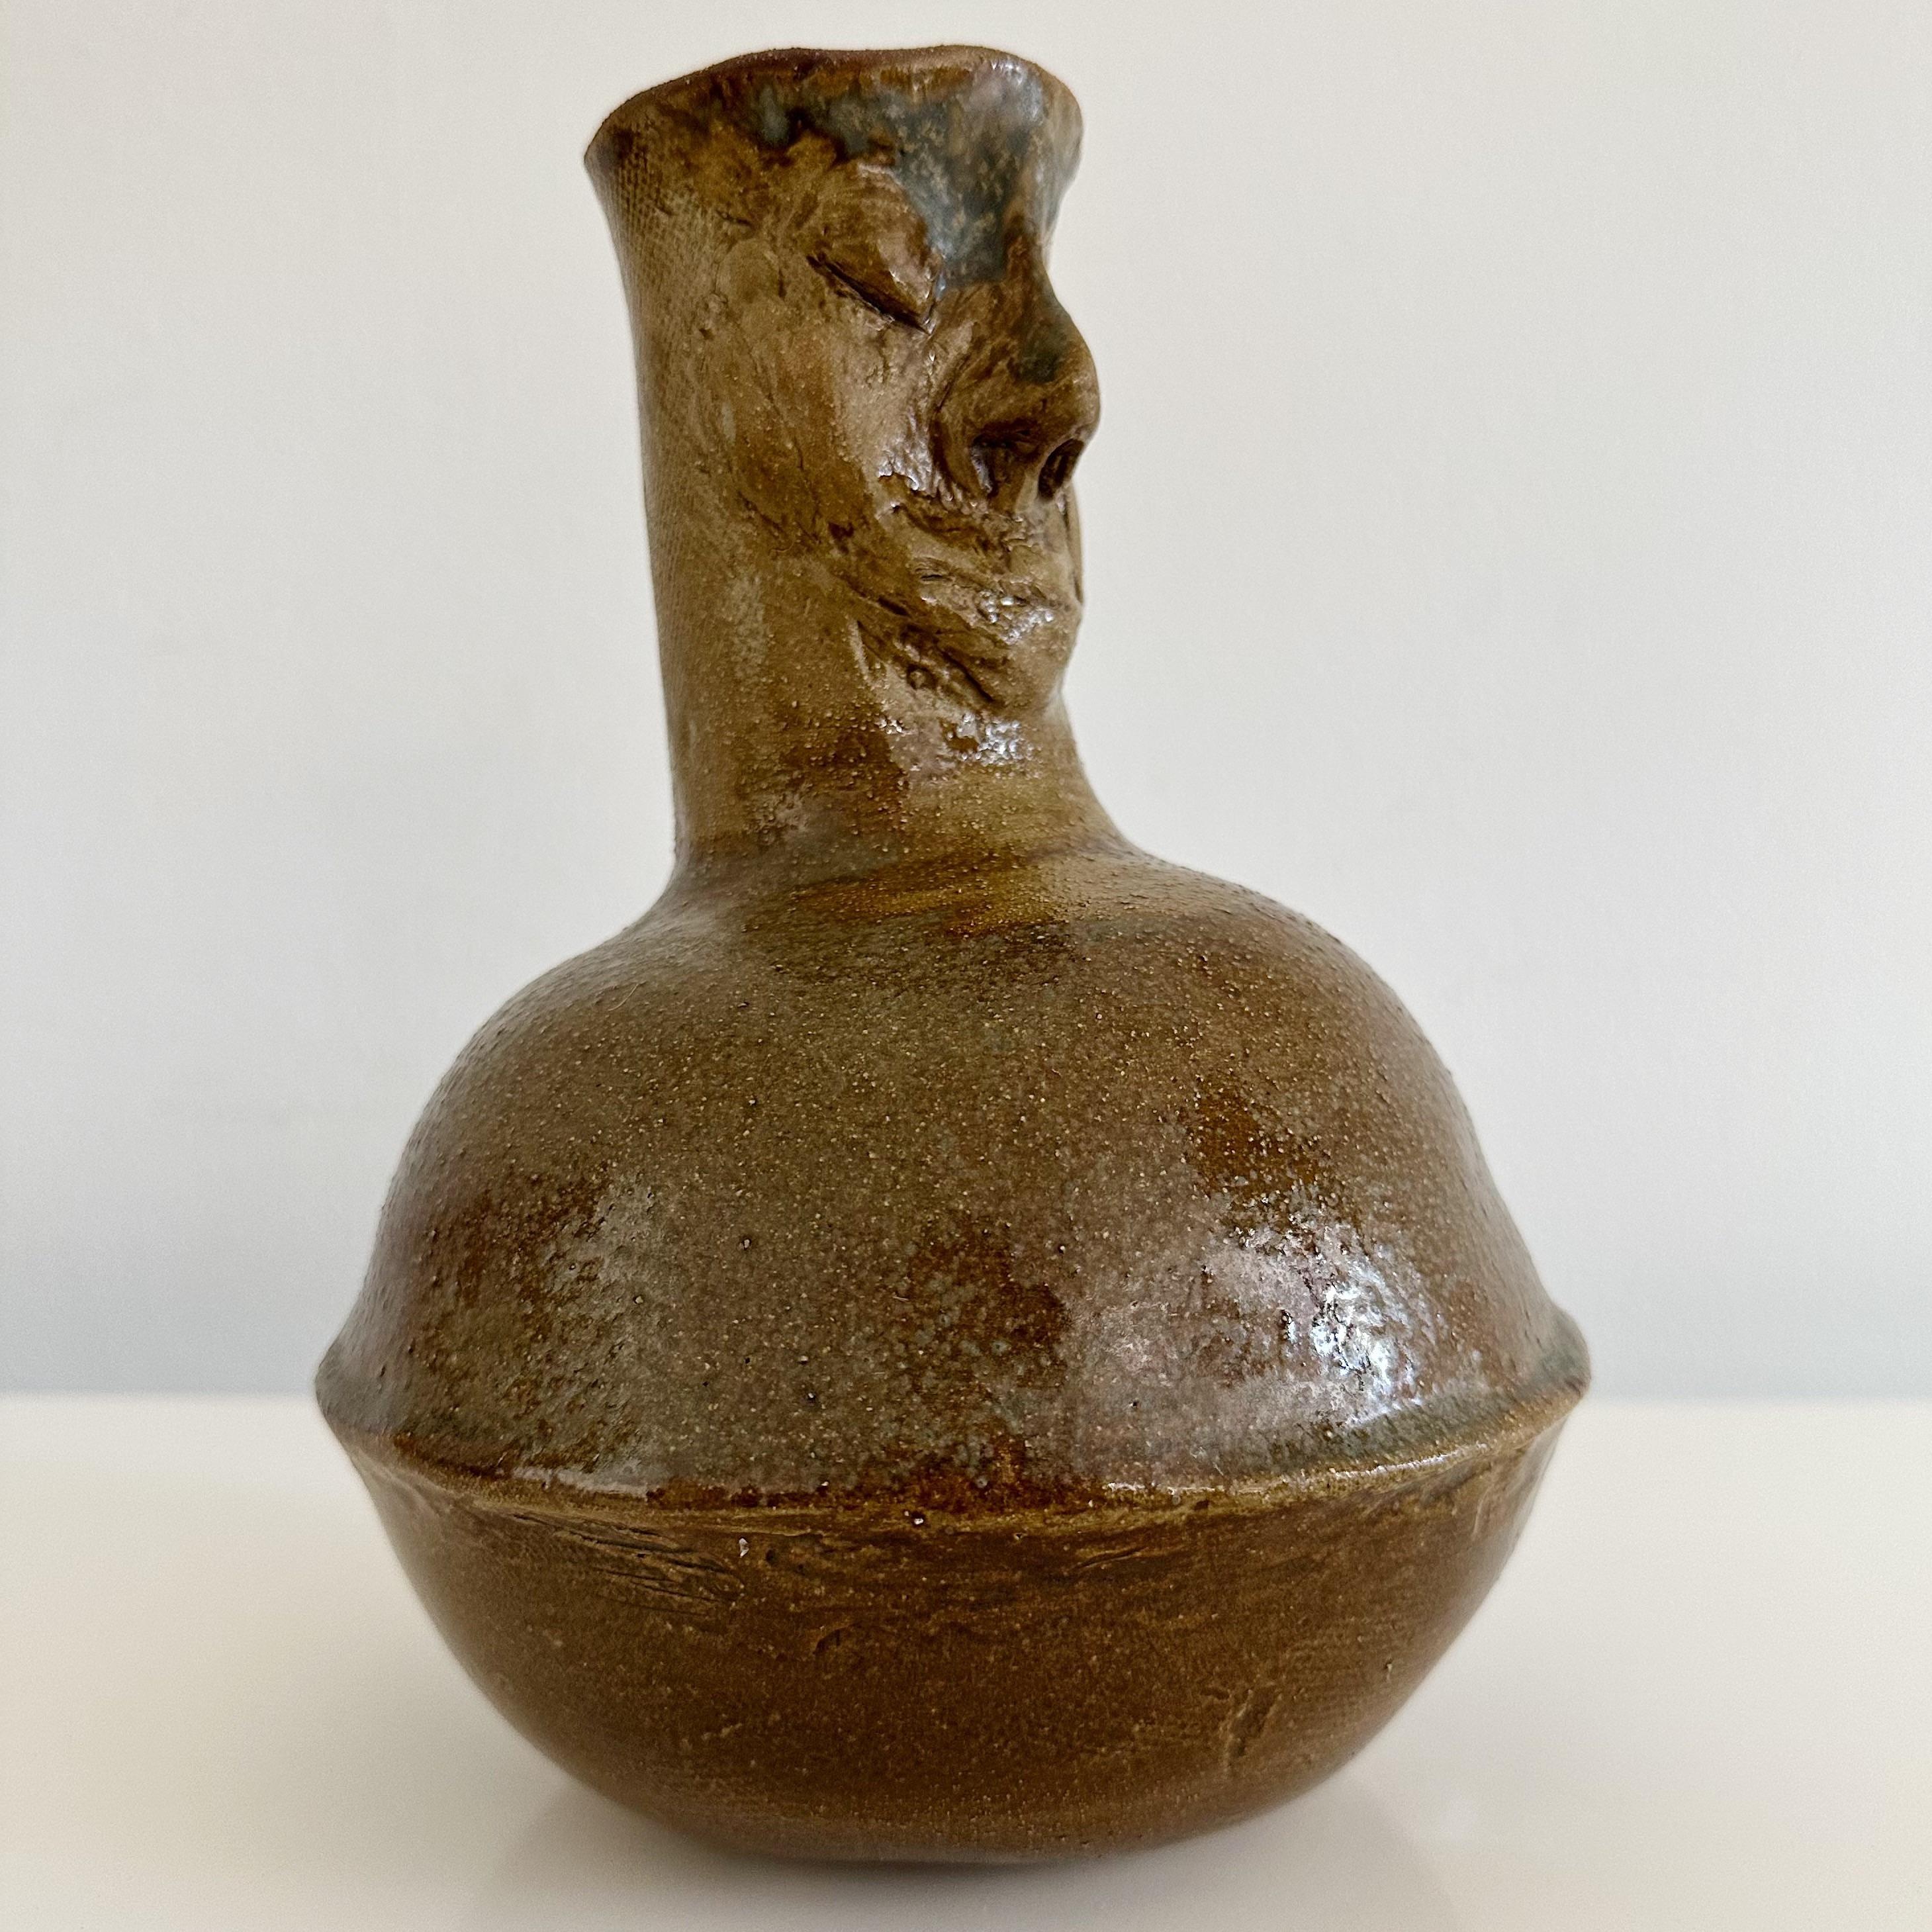 Wir präsentieren eine einzigartige Studio Keramik glasiert figuralen Griff Krug, Krug oder könnte auch als Vase verwendet werden. Geschaffen von der bekannten Bildhauerin Ruth Joffa. Dieses signierte Werk hat eine hervorragende Provenienz, da es